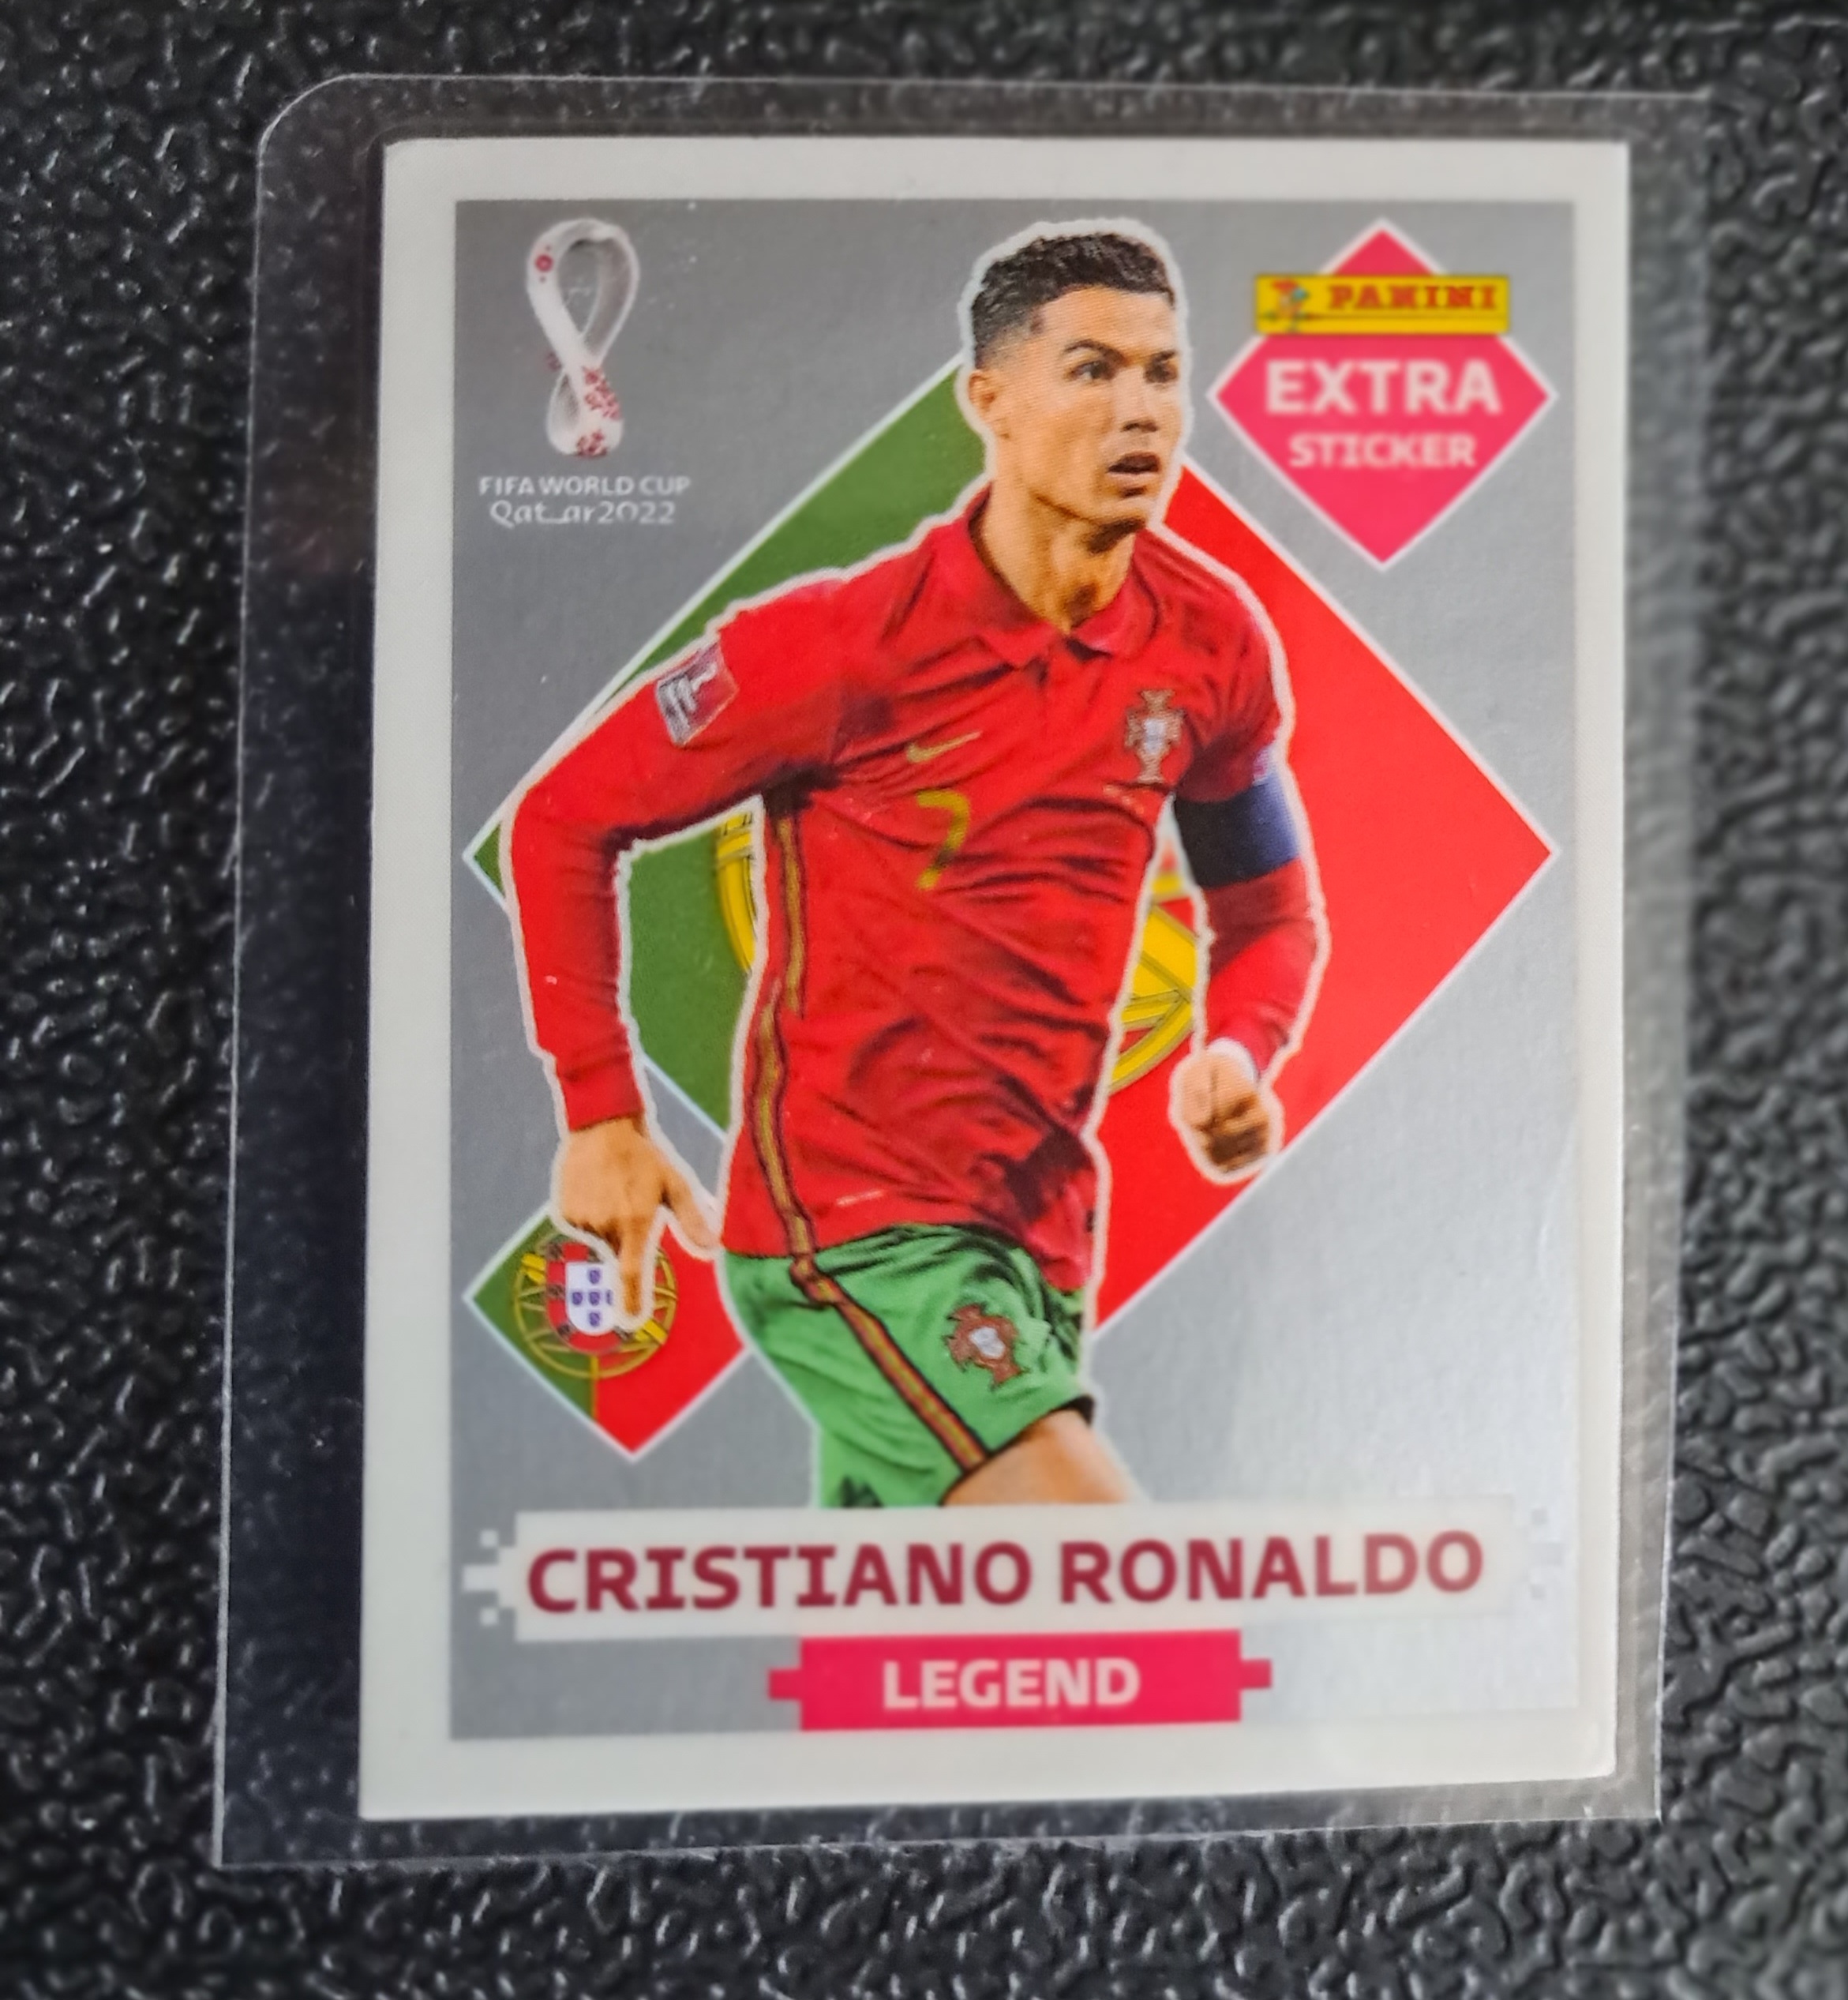 Ronaldo Silver extra stiker